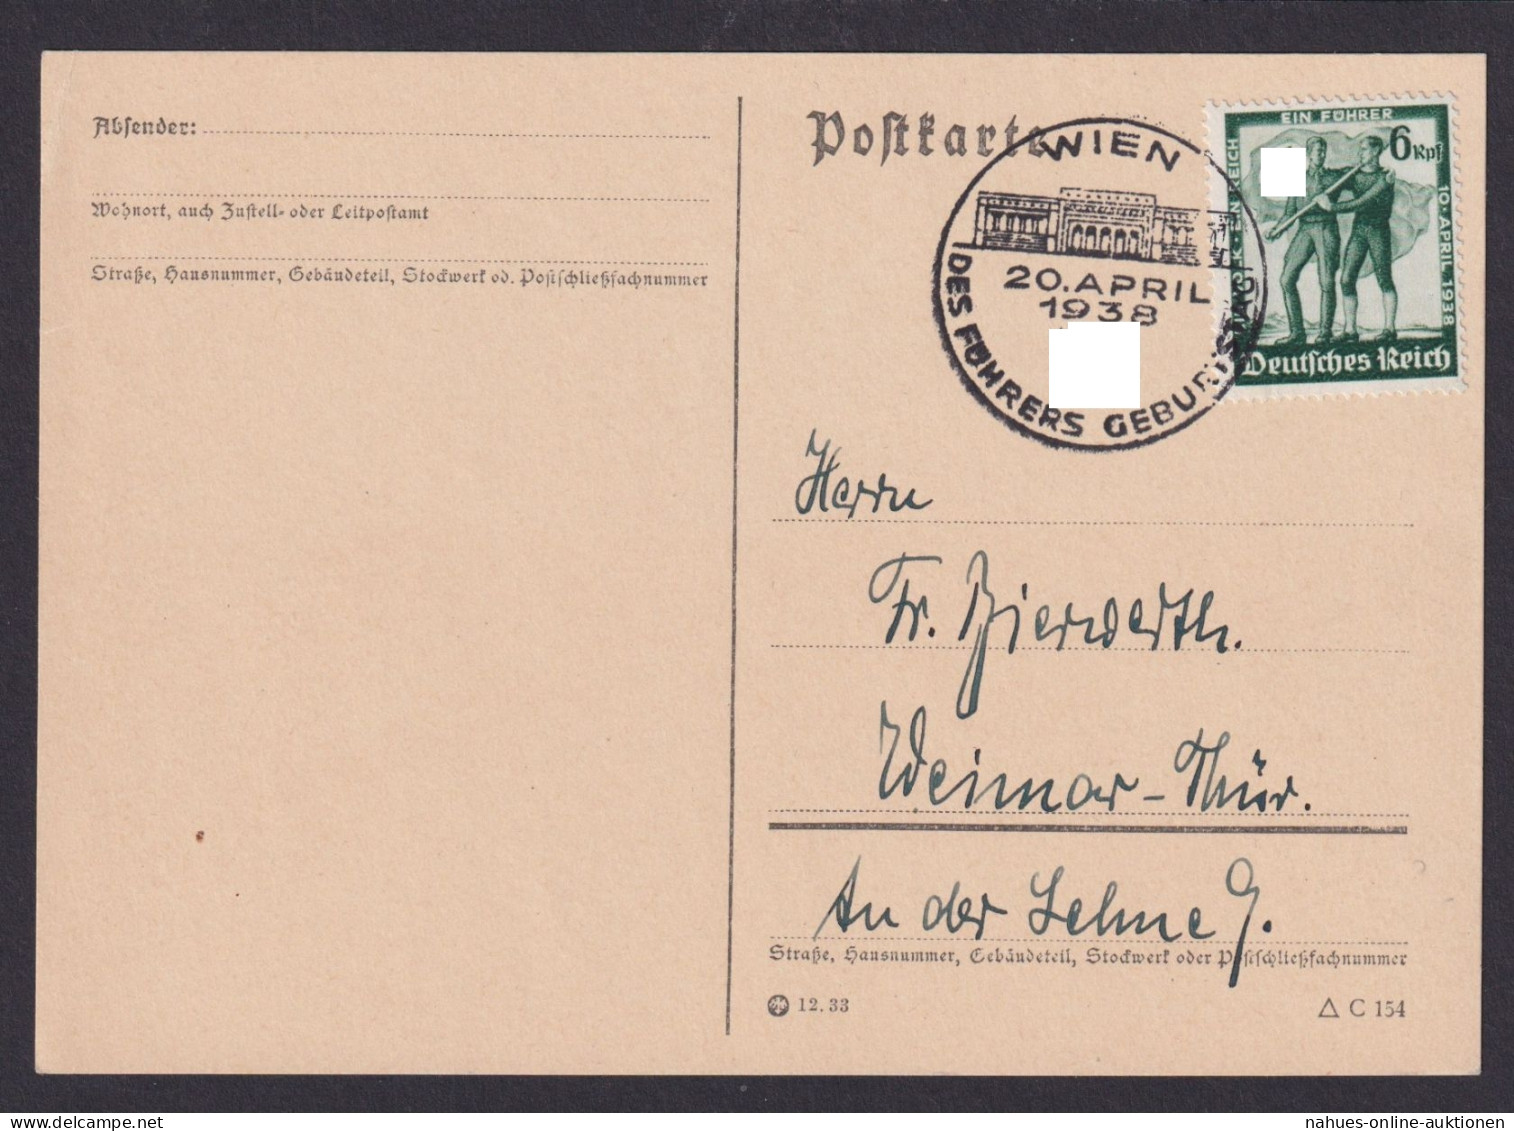 Ostmark Österreich Wien Weimar Thüringen Deutsches Reich Postkarte SSTGeburtstag - Storia Postale